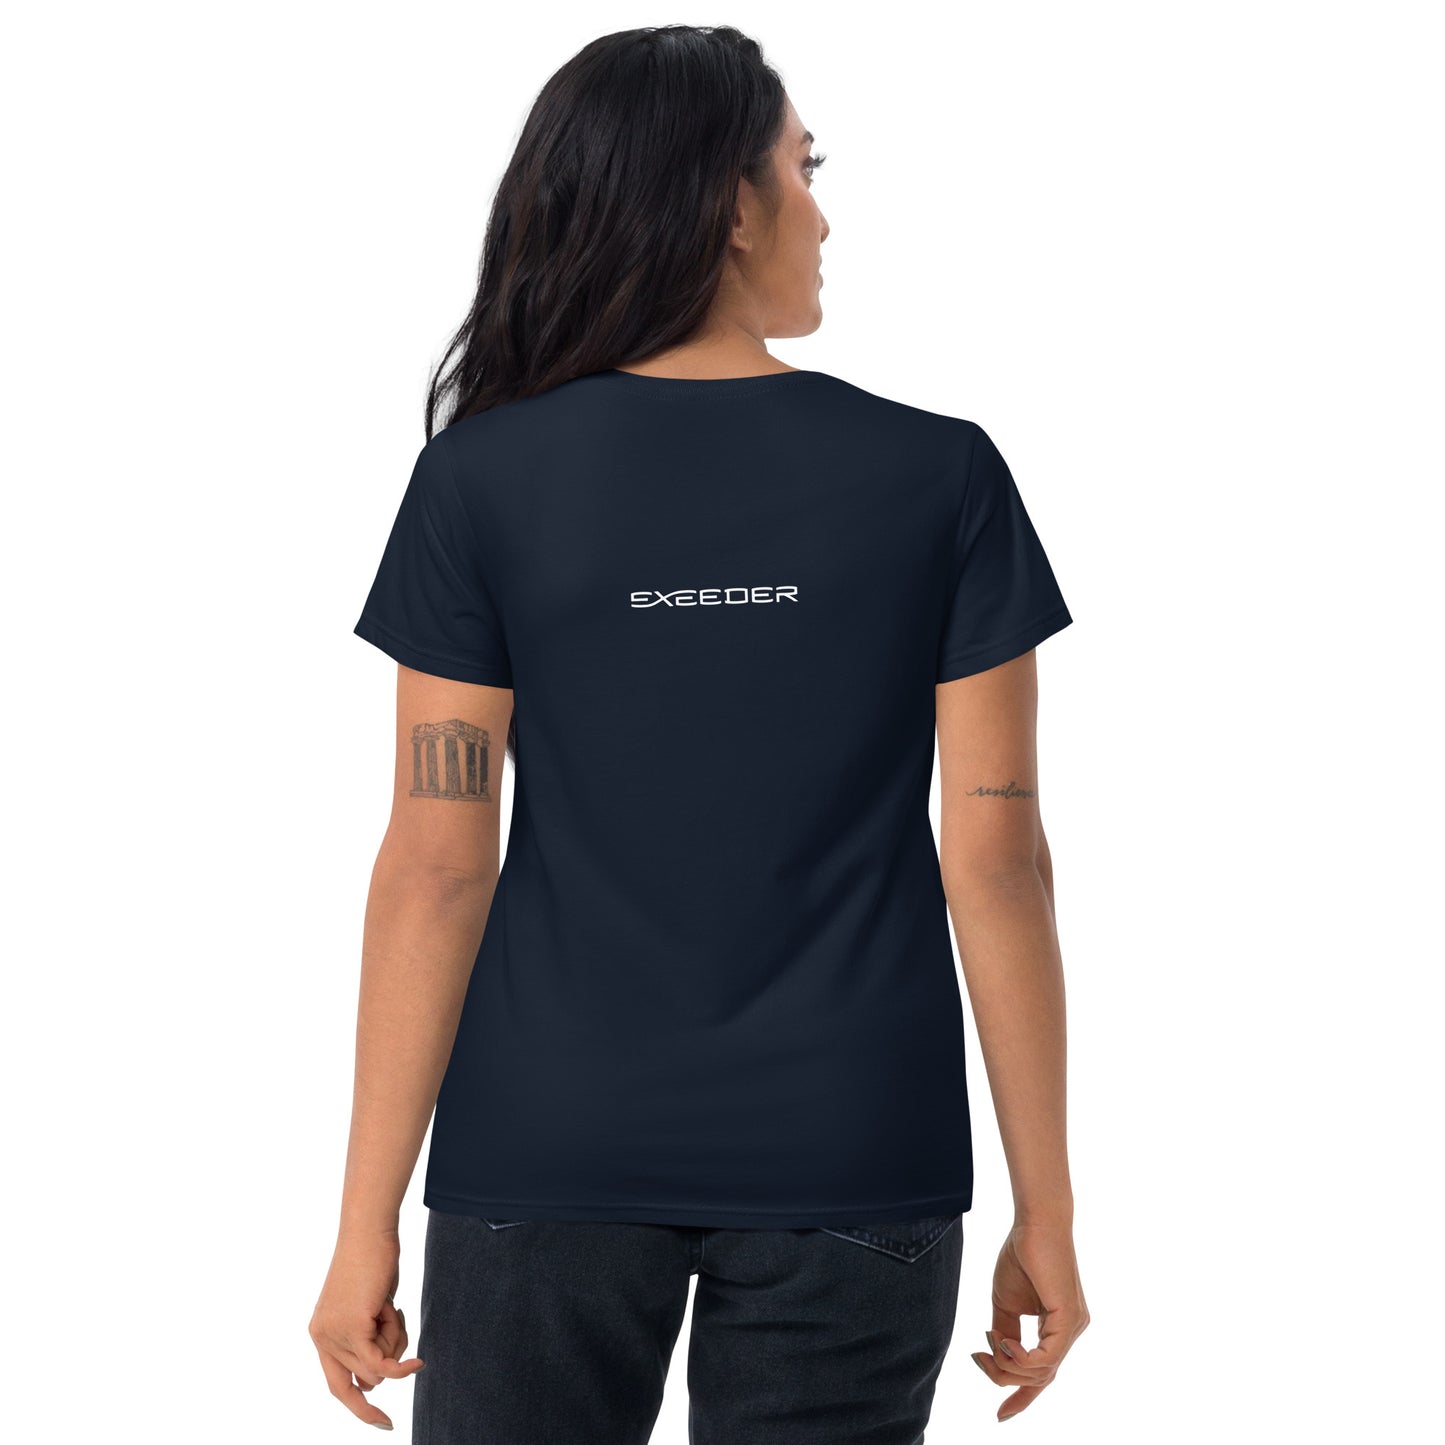 GOFURTHER Women's short sleeve t-shirt